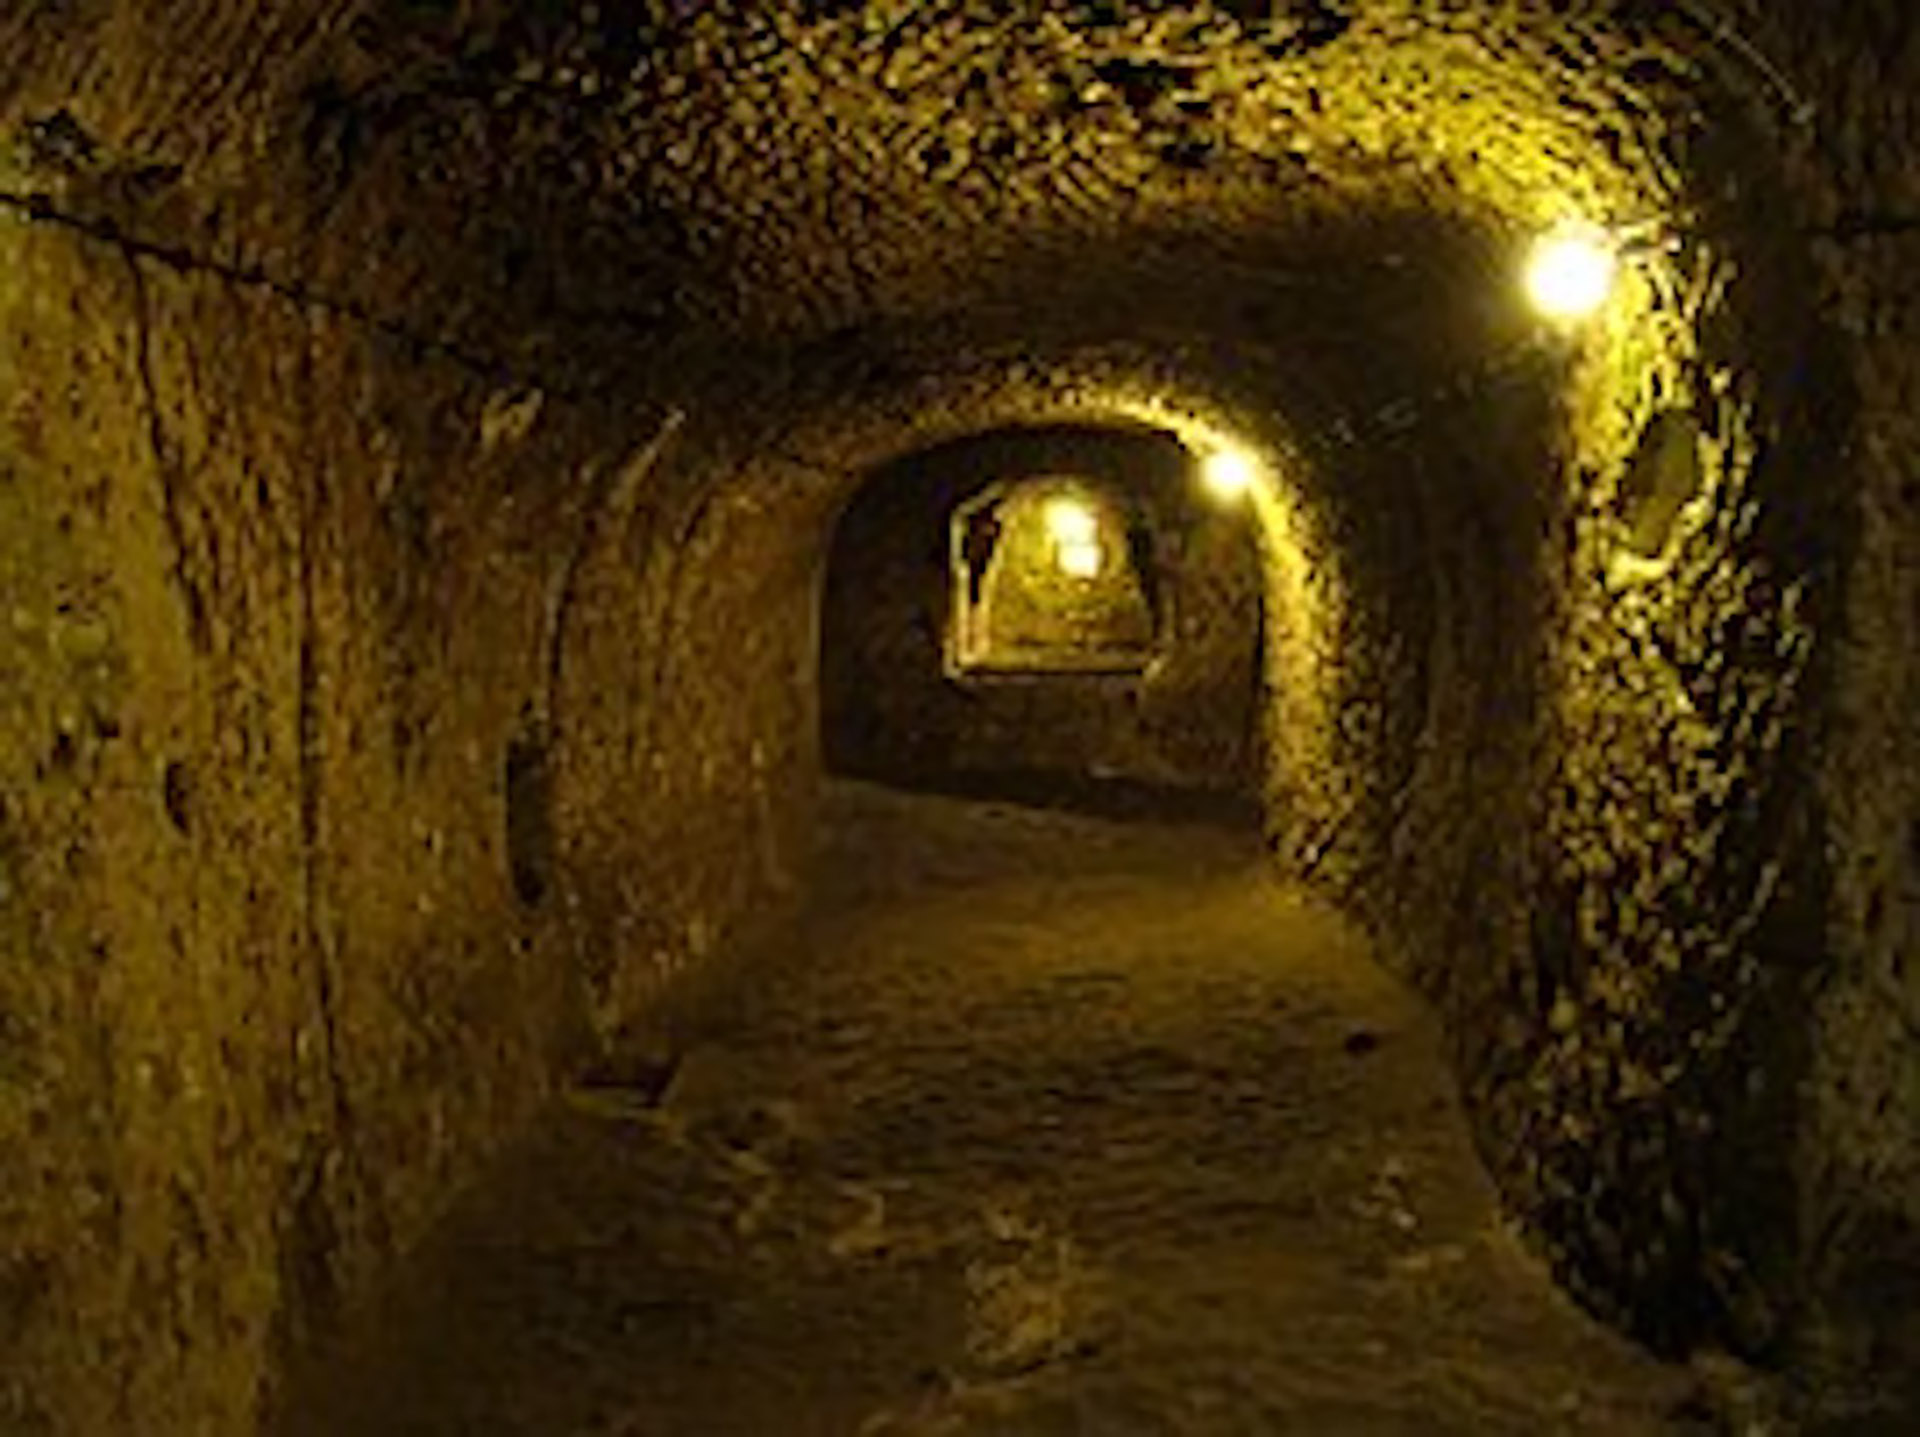 Se recomienda buscar agujeros negros que indiquen las entradas a moradas, túneles y palomares excavados en la roca hace muchos siglos (Oficina de prensa de Derinkuyu)